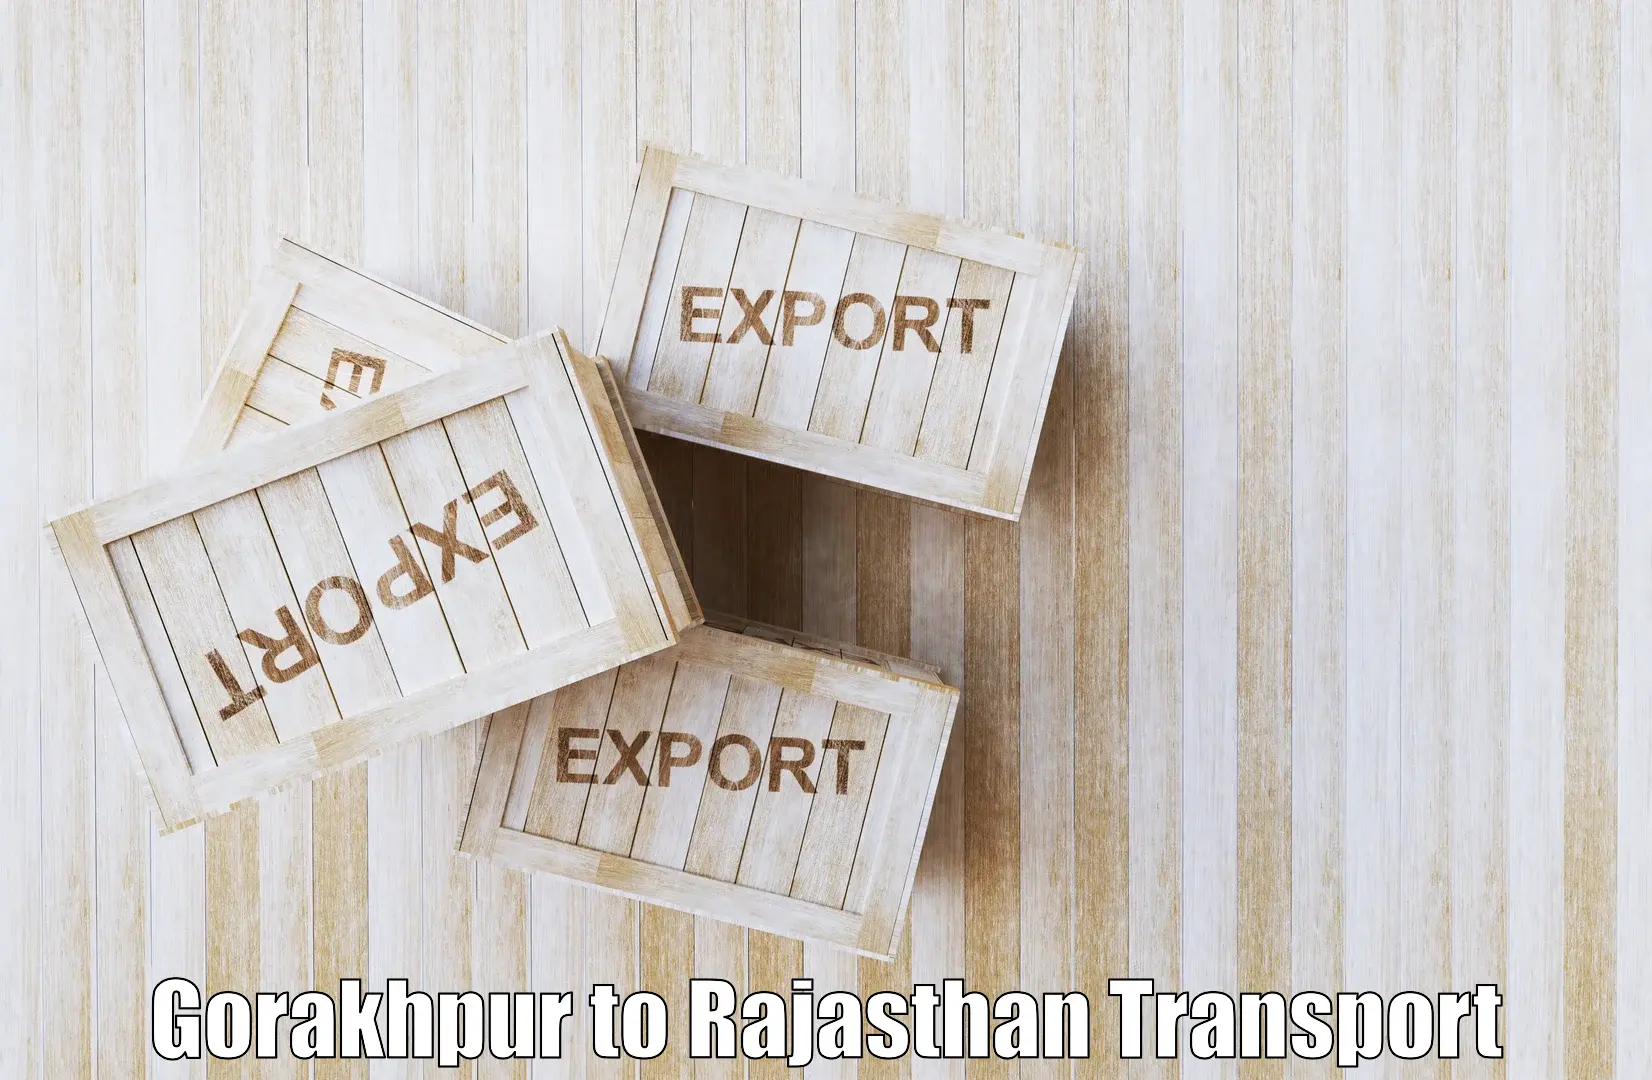 Shipping partner Gorakhpur to Sagwara